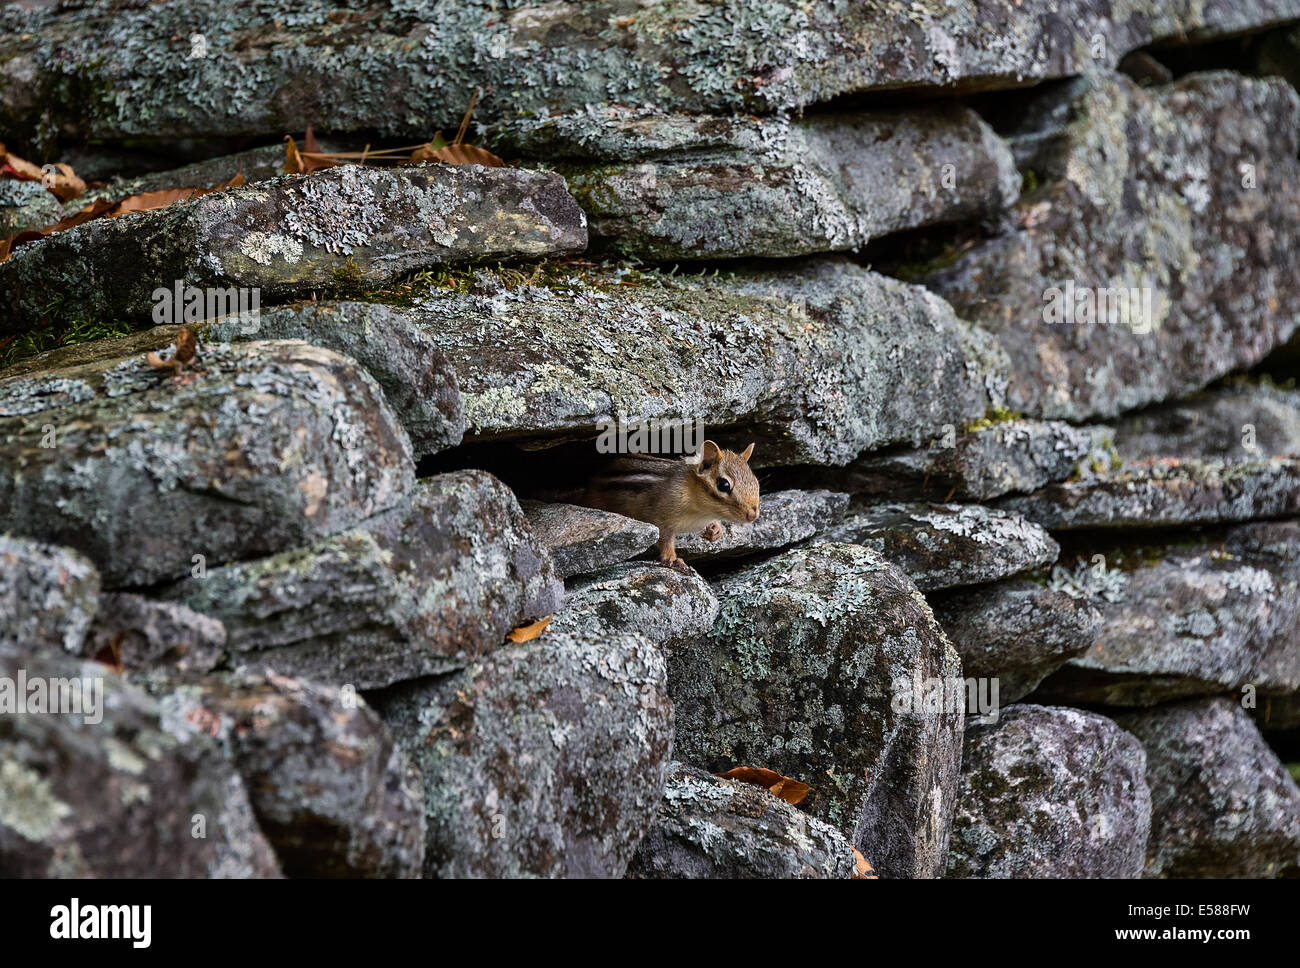 Scoiattolo striado nasconde in una rustica parete fildstone, Vermont, USA Foto Stock